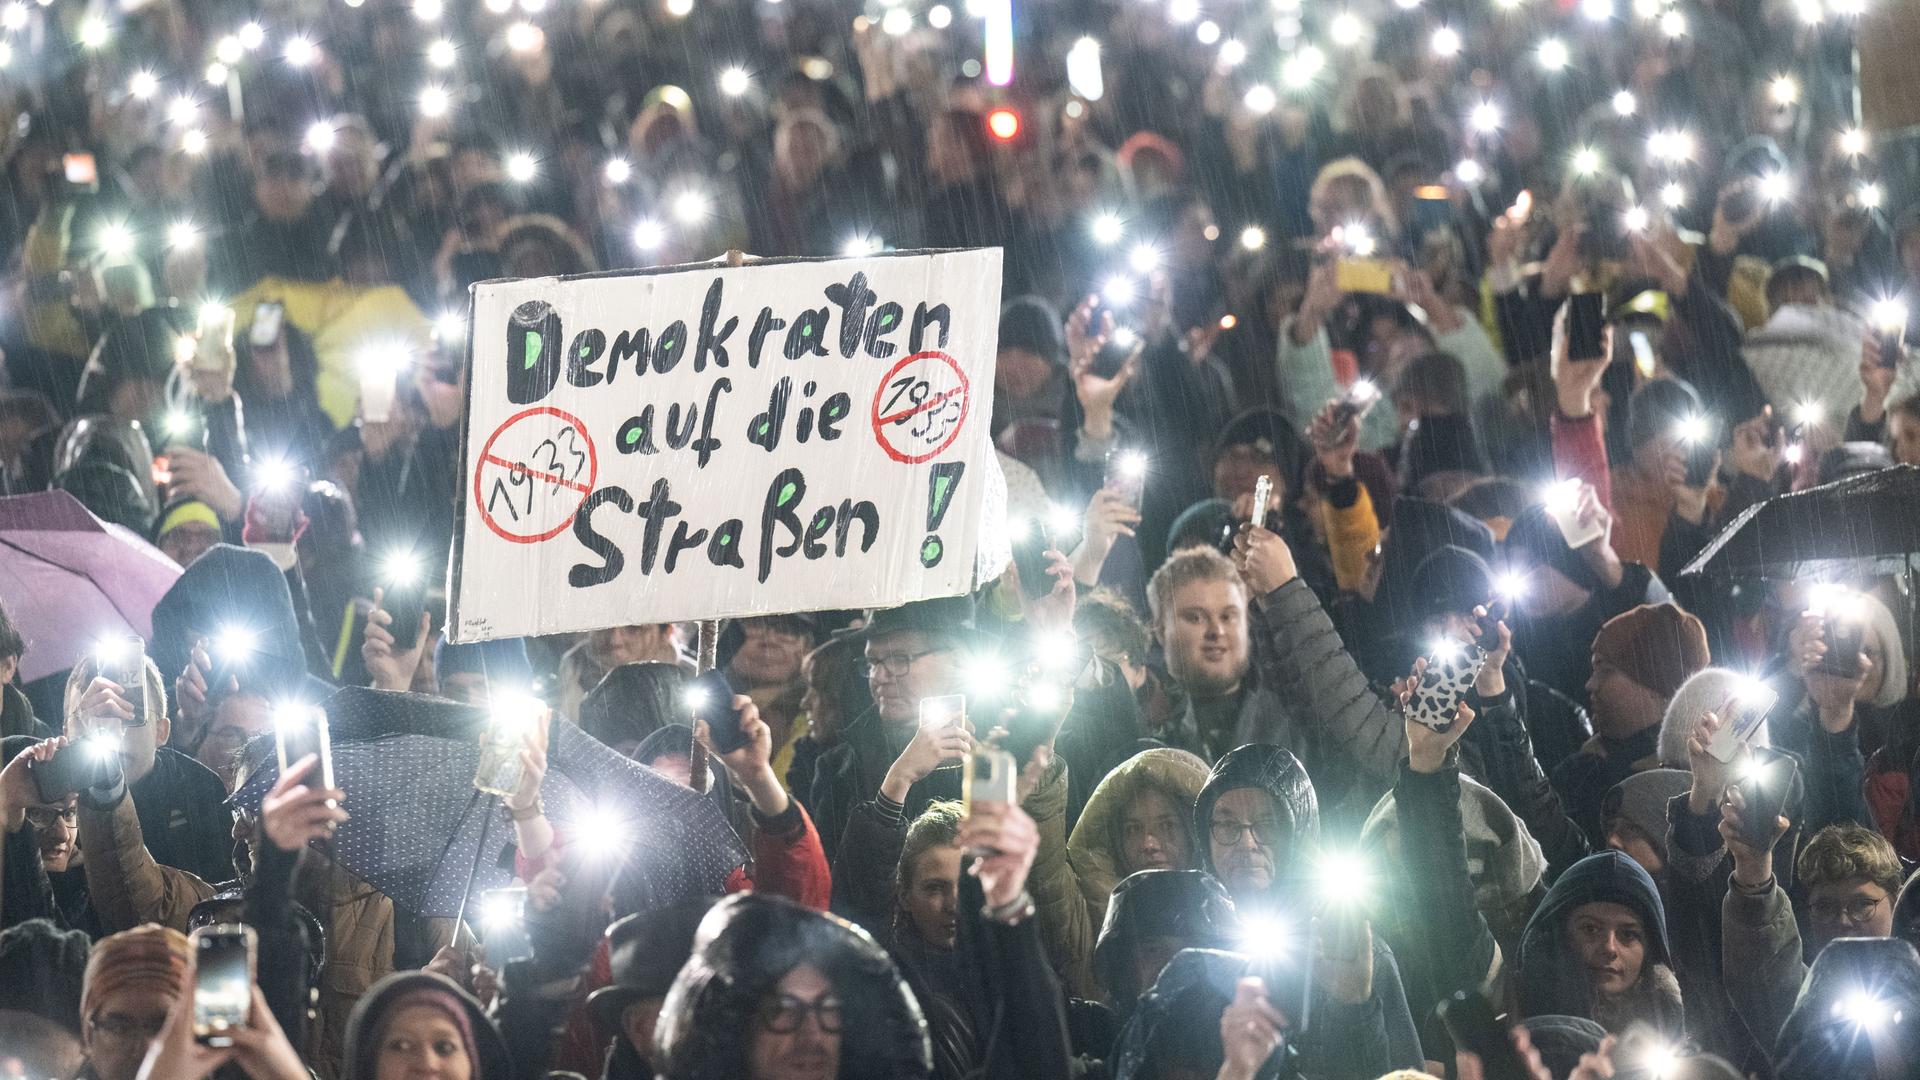 Hessen, Darmstadt: Mehrere Menschen nehmen an einer Demonstration gegen Rechtsextremismus und die AfD teil. Dabei steht auf einem Plakat "Demokraten auf die Straßen". Zum Abschluss der Kundgebung halten die Teilnehmer im strömenden Regen ihre Mobiltelefone in die Höhe.